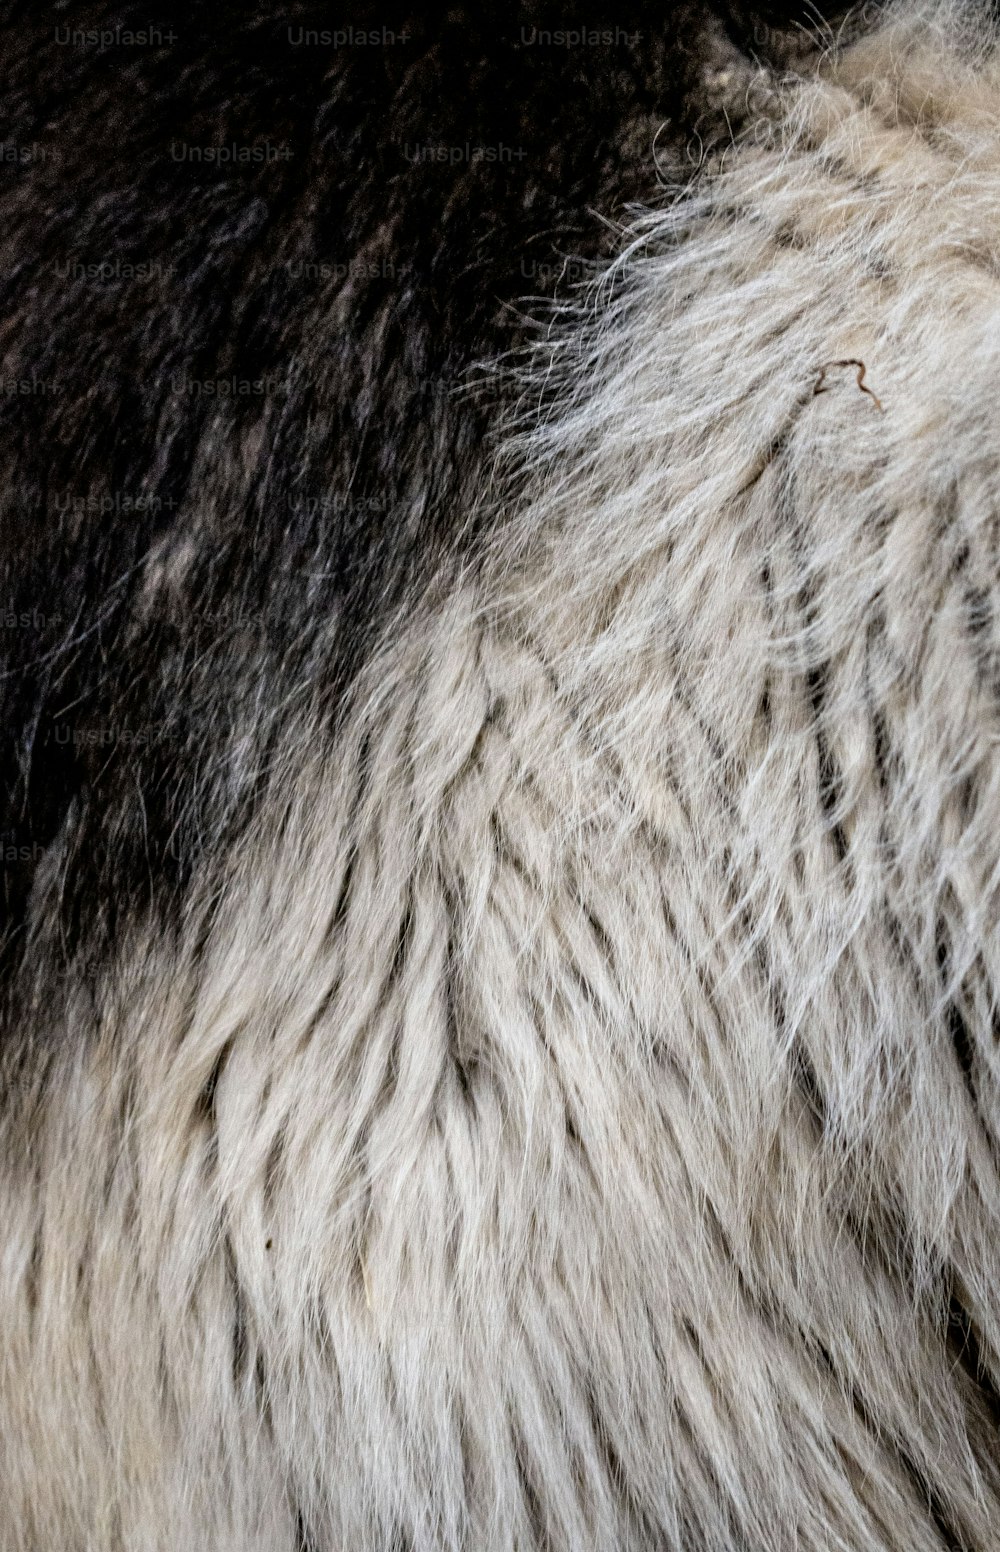 Un primer plano del pelaje de un animal blanco y negro